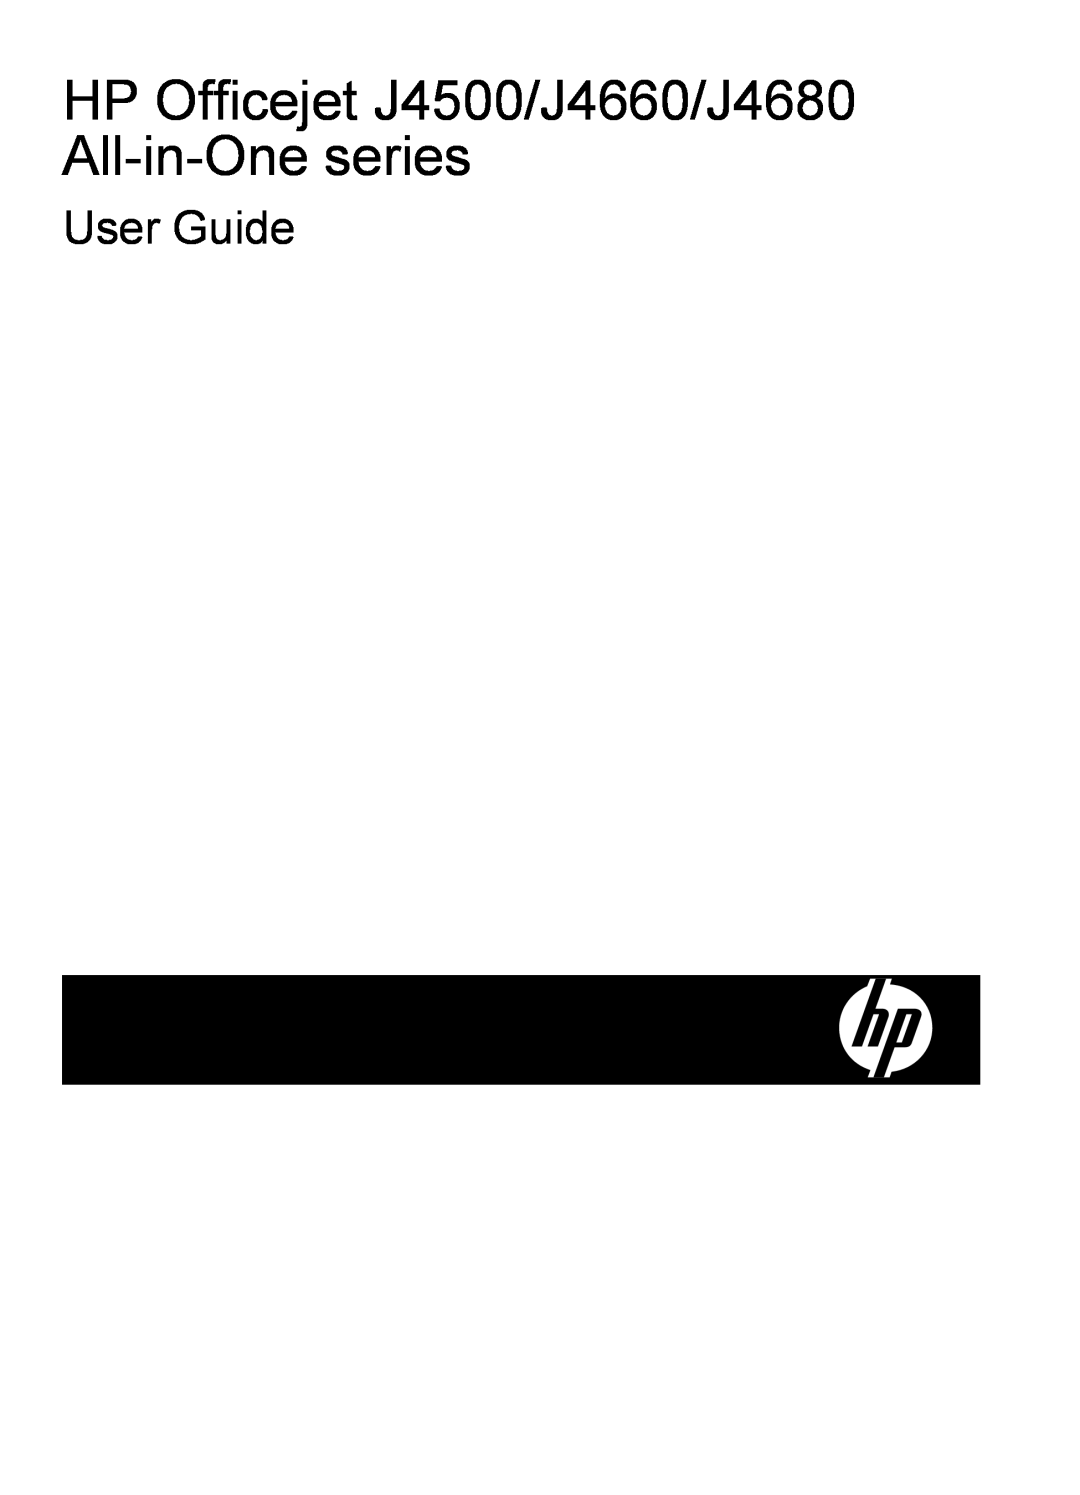 HP J4580, J4540, J4550 manual HP Officejet J4500/J4660/J4680 All-in-One series, User Guide 